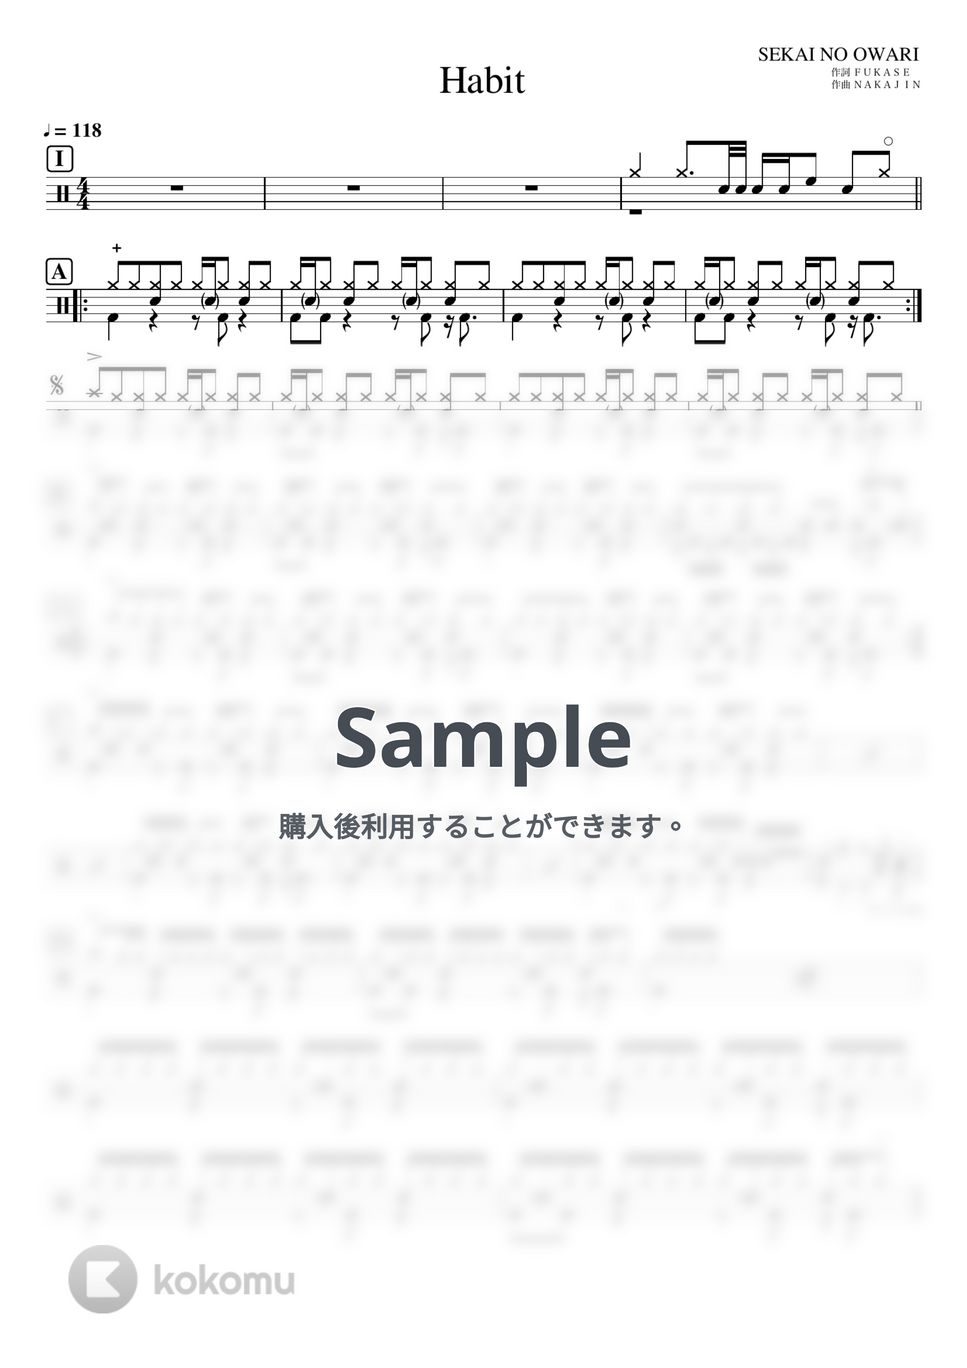 SEKAI NO OWARI - Habit (ドラム譜のみ) by YUTO